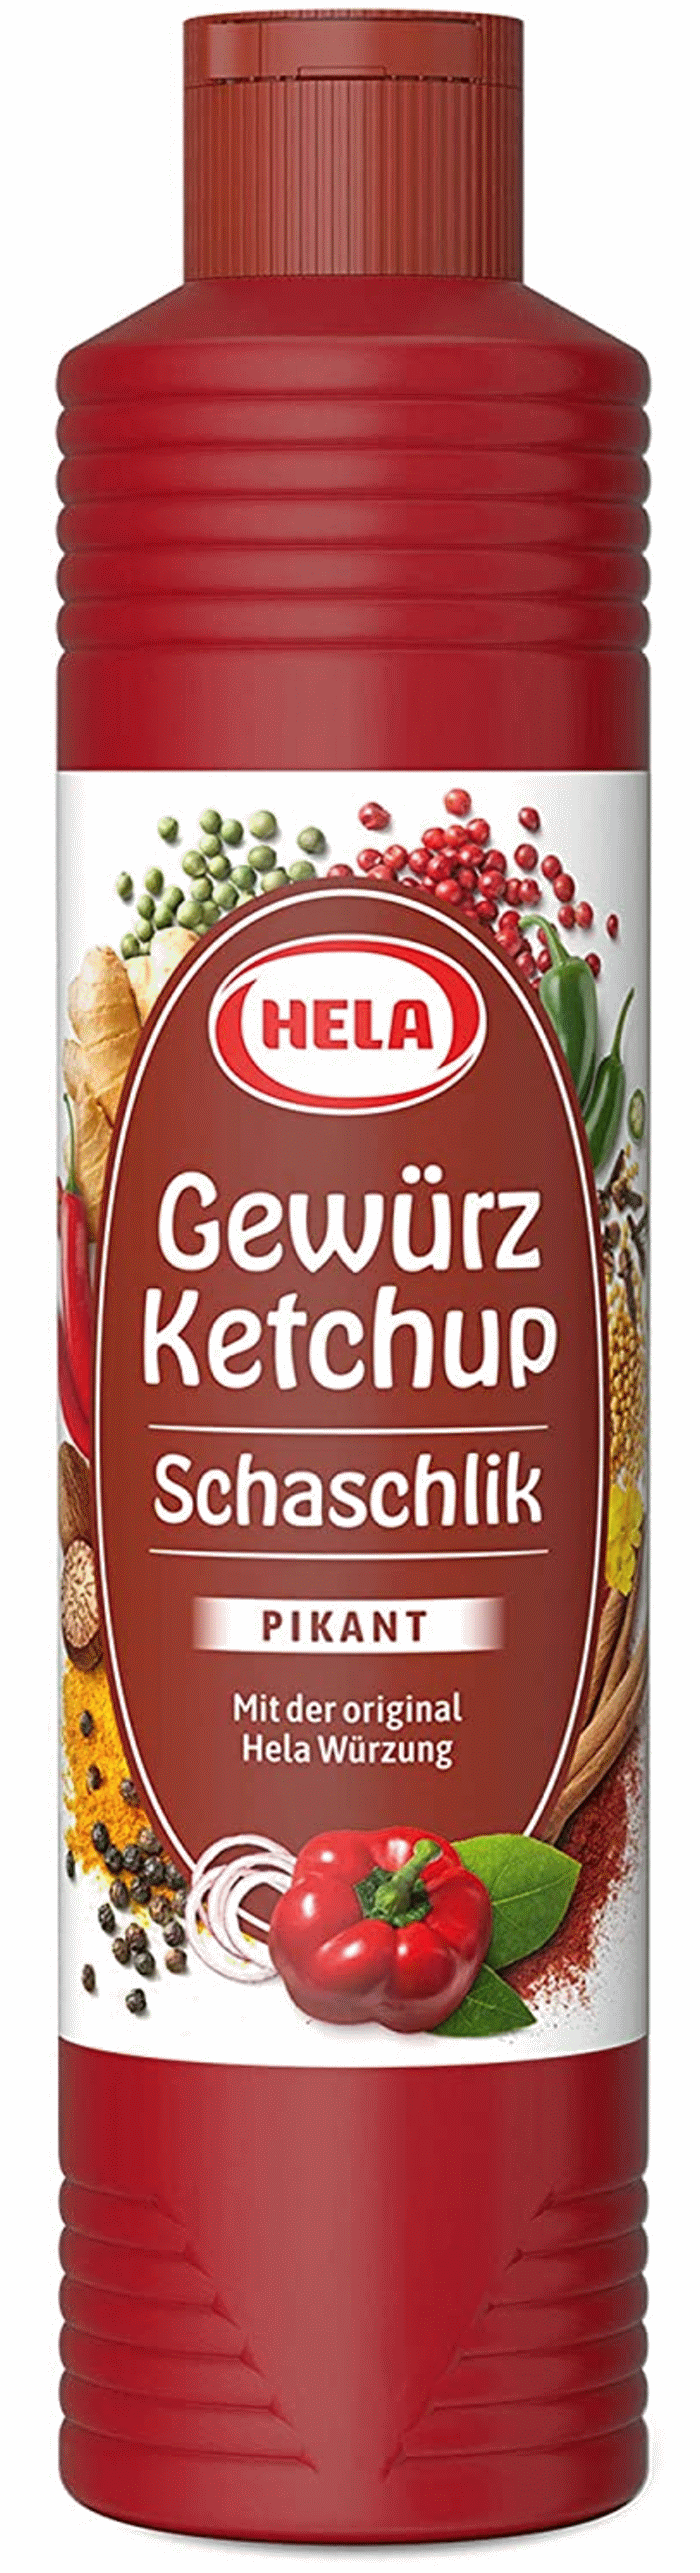 Hela Schaschlik Gewürz Ketchup Pikant 800ml